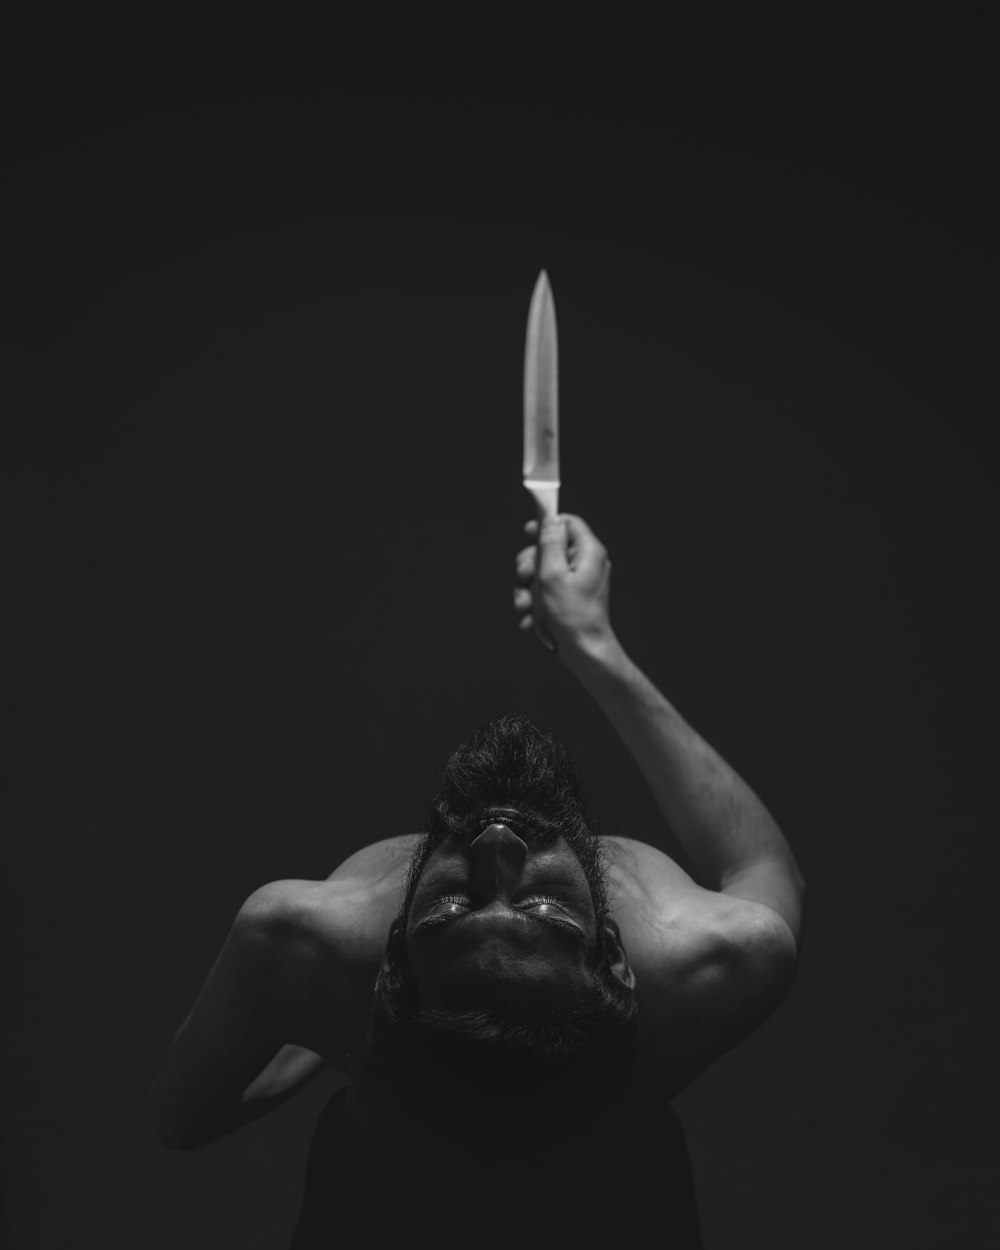 칼을 들고 있는 남자의 회색조 사진